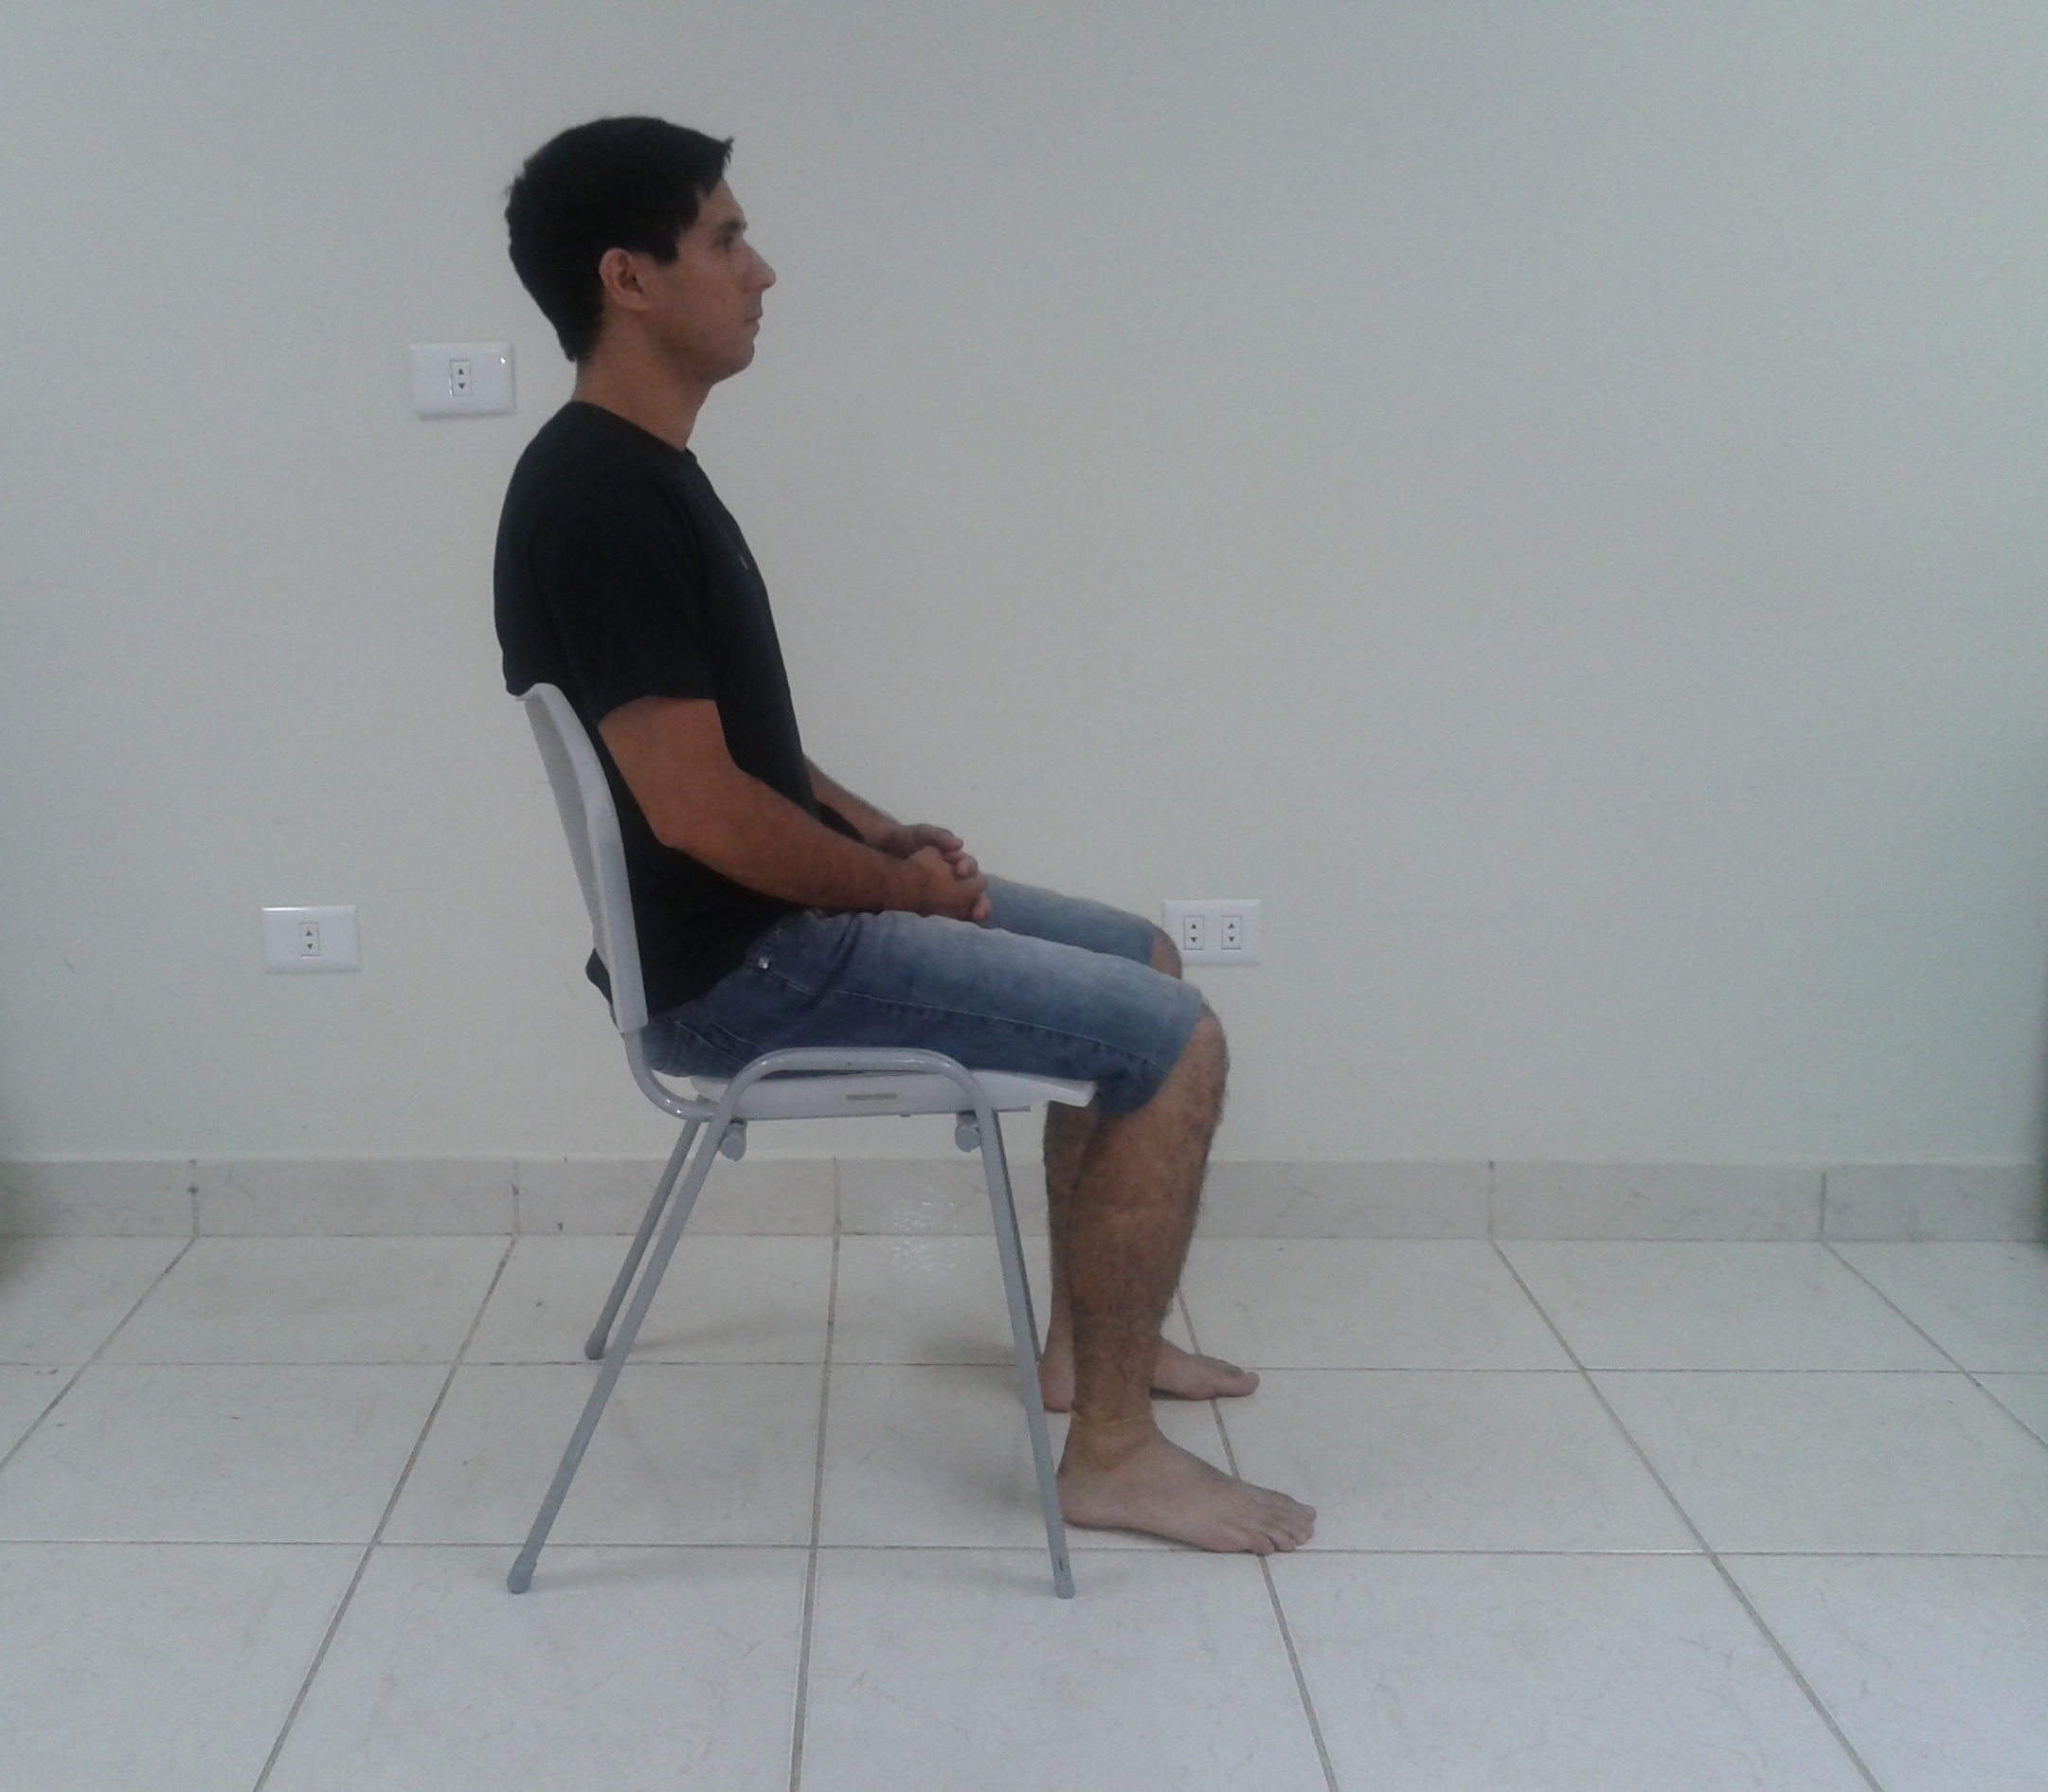 sentar corretamente: fica postura na cadeira? | Idot Blog